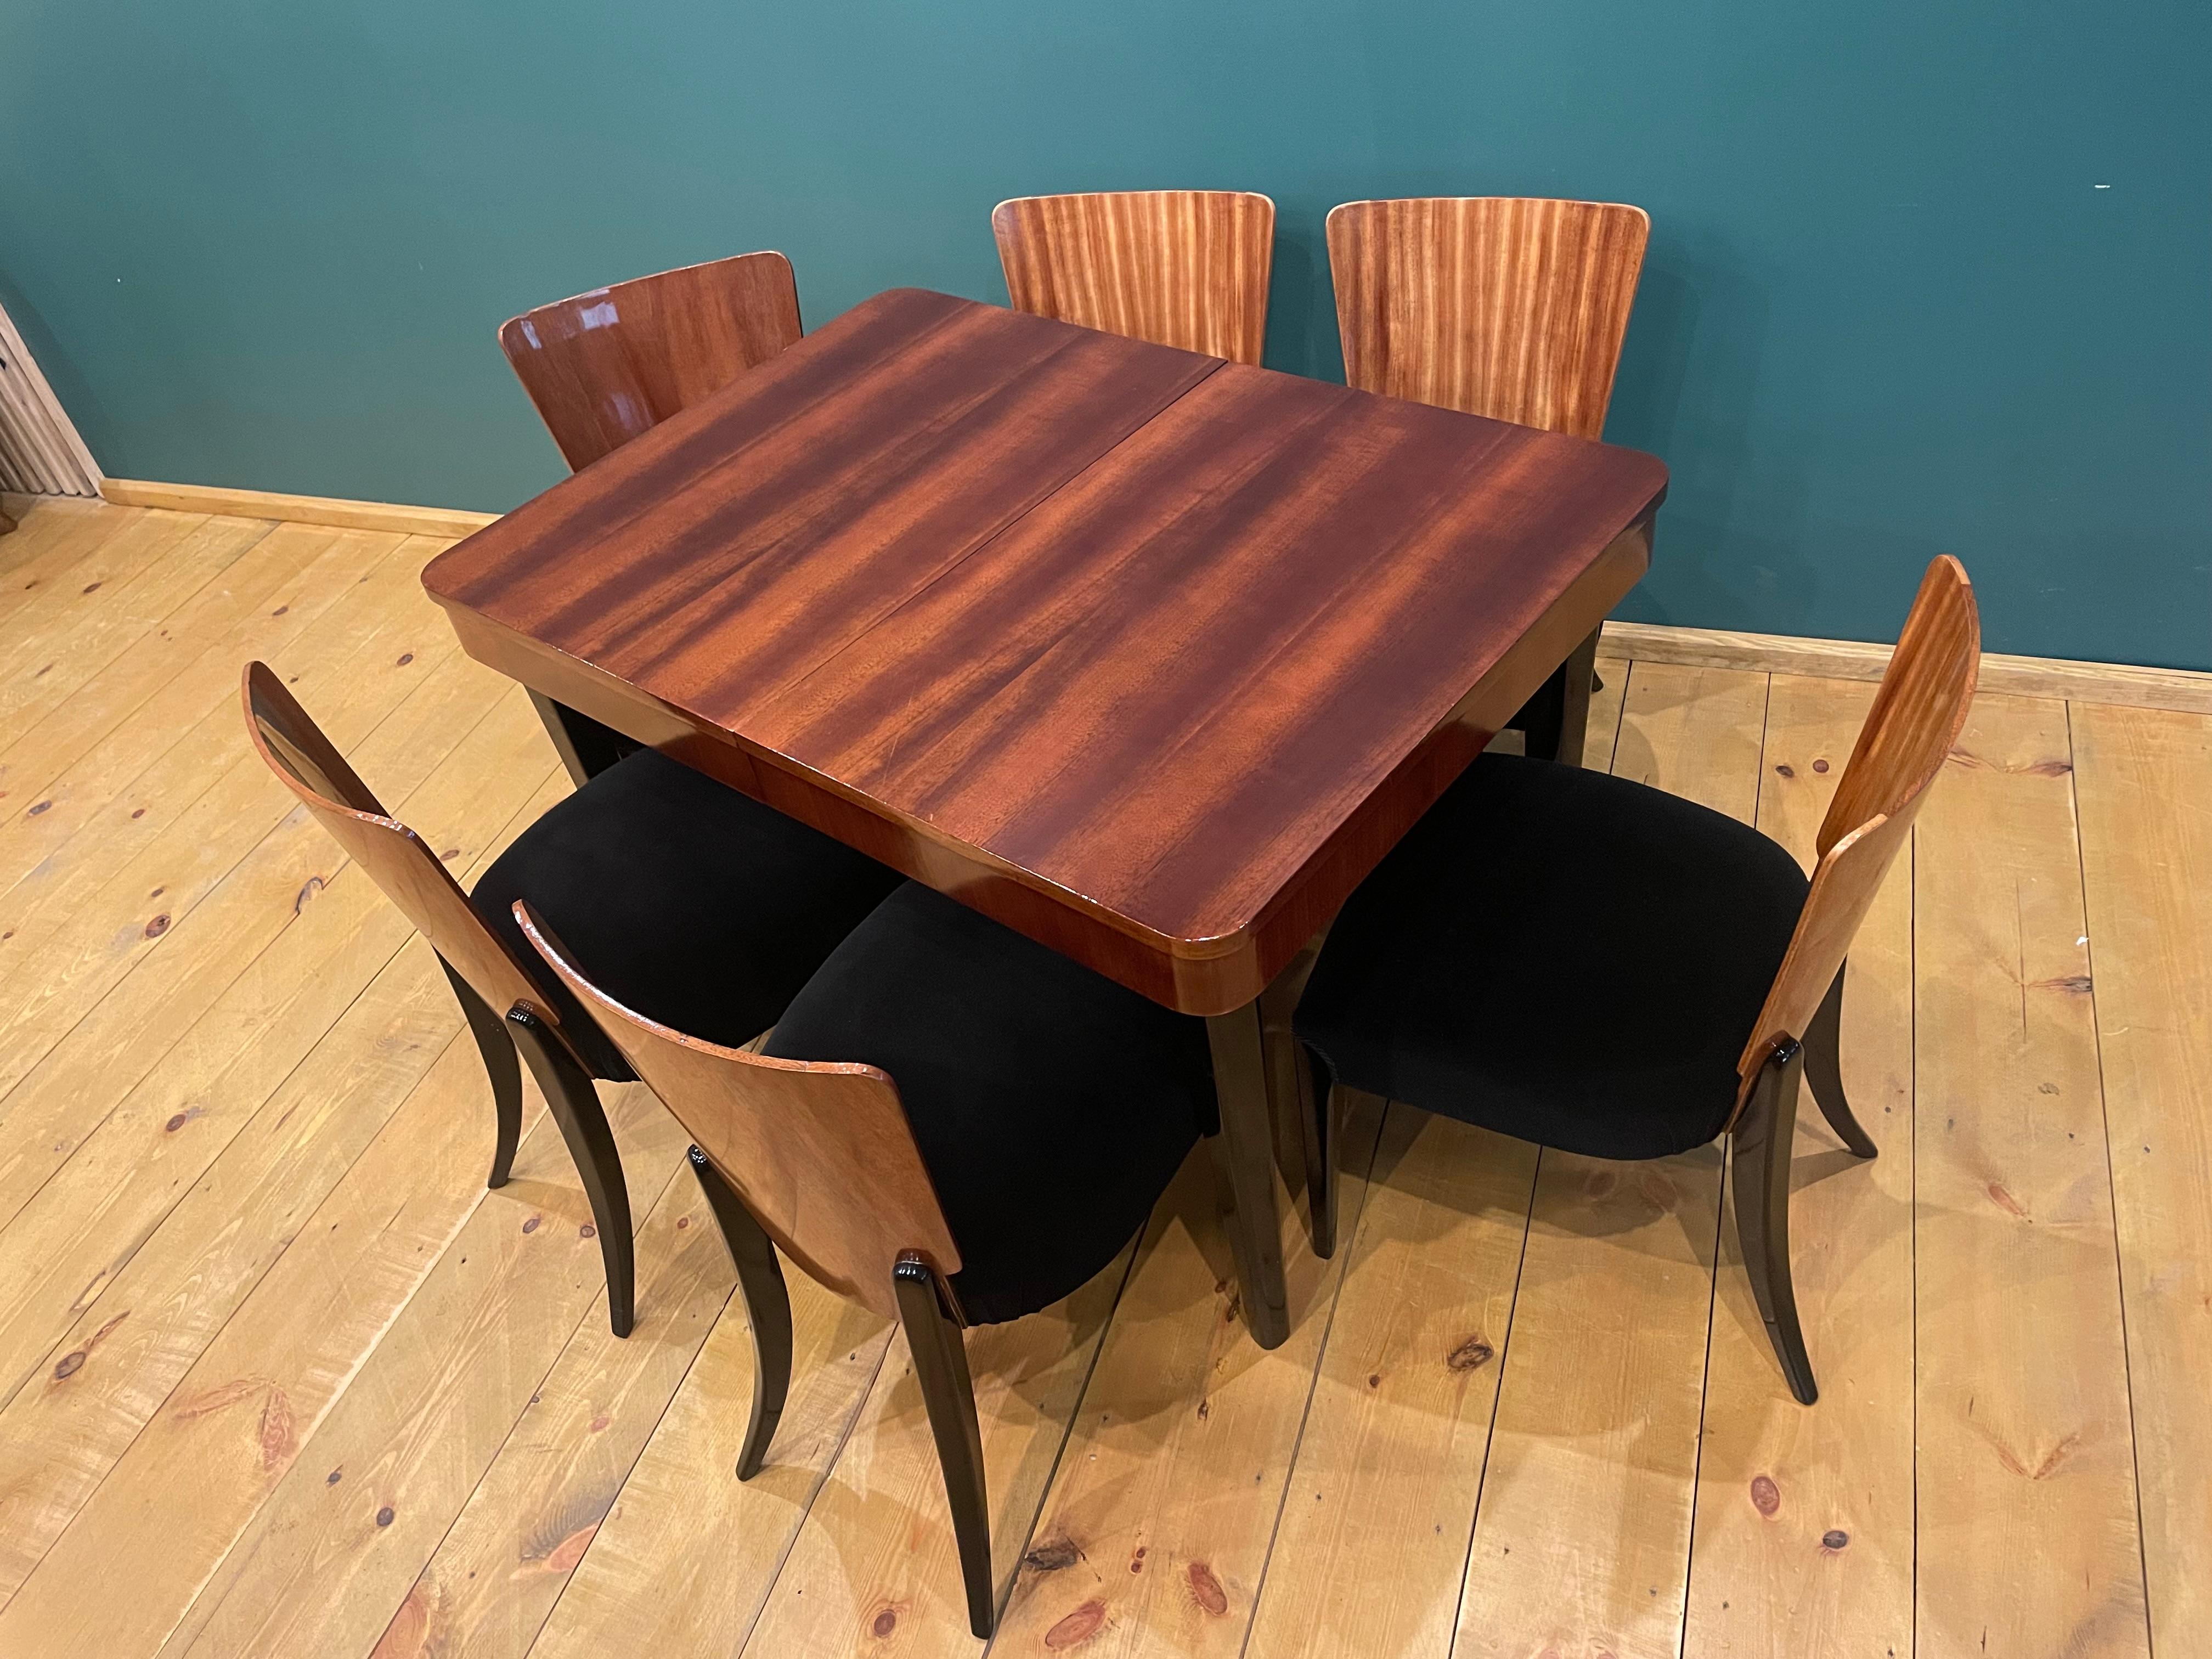 Wir präsentieren Art Deco Esszimmermöbel, die einen Tisch und vier Stühle umfassen. Ein Set aus dem Jahr 1940, entworfen von einem berühmten tschechischen Designer
Jindrich Halabala, (ein tschechischer Designer, der zu den bedeutendsten Schöpfern